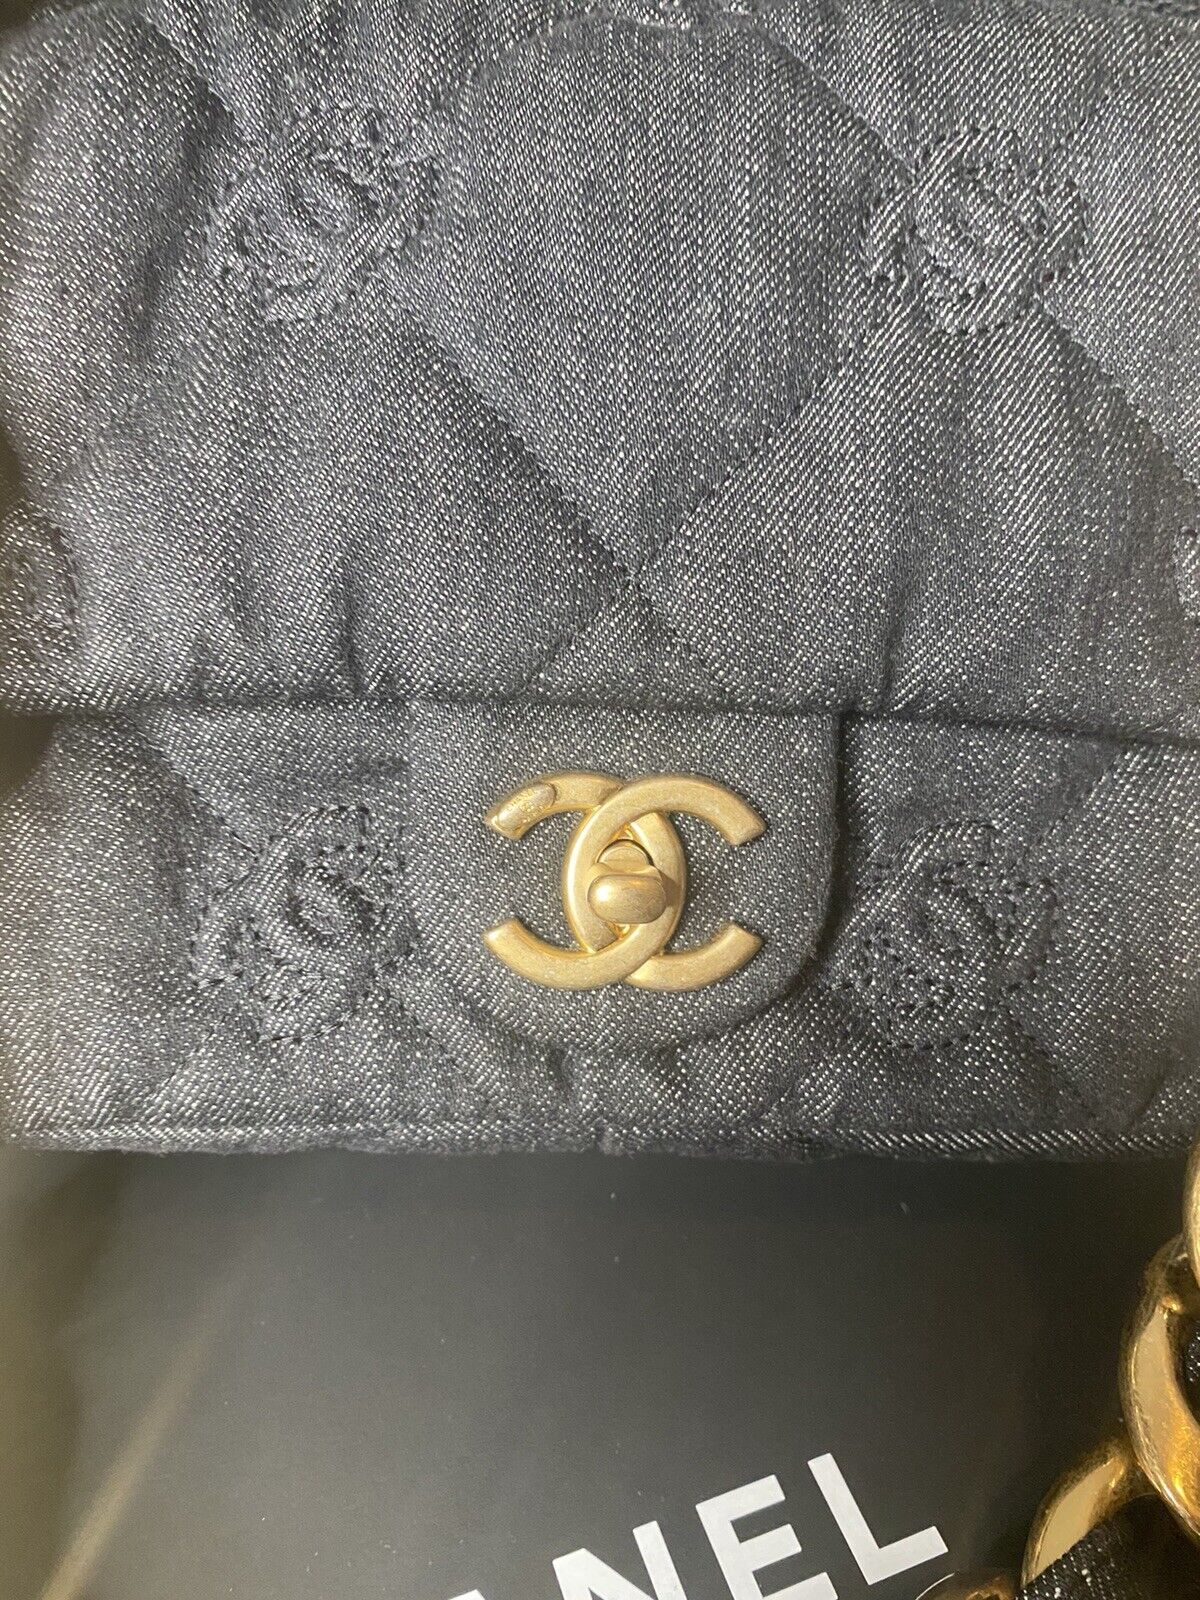 Chanel Washed Denim Medium Classic Flap